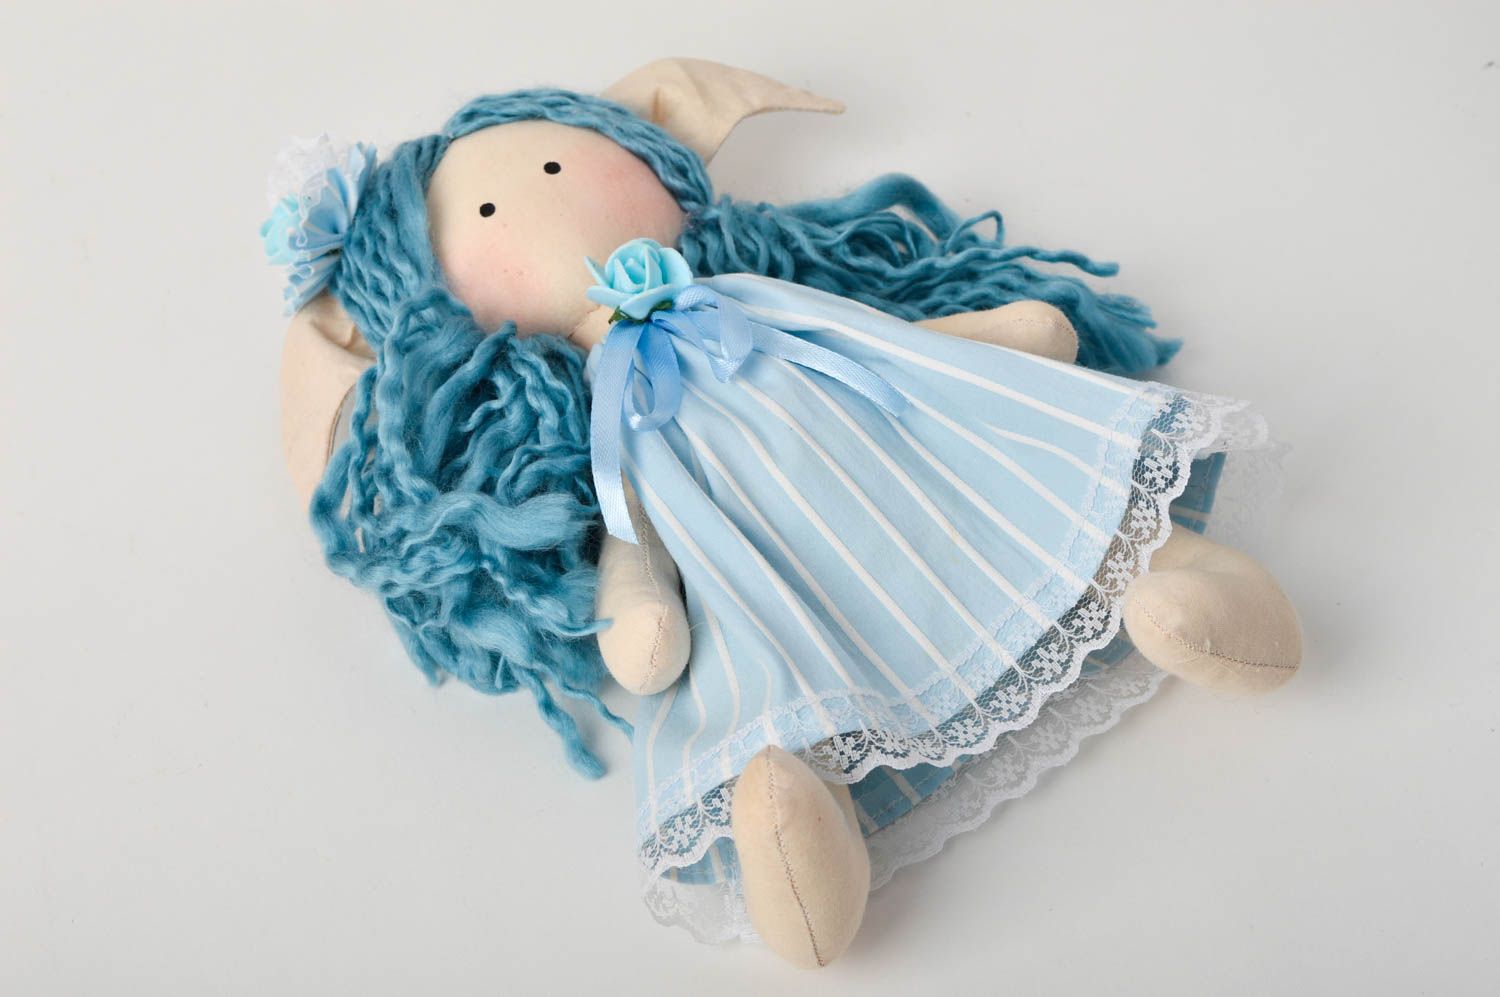 Кукла ручной работы кукла из ткани голубая мягкая кукла авторского дизайна фото 4